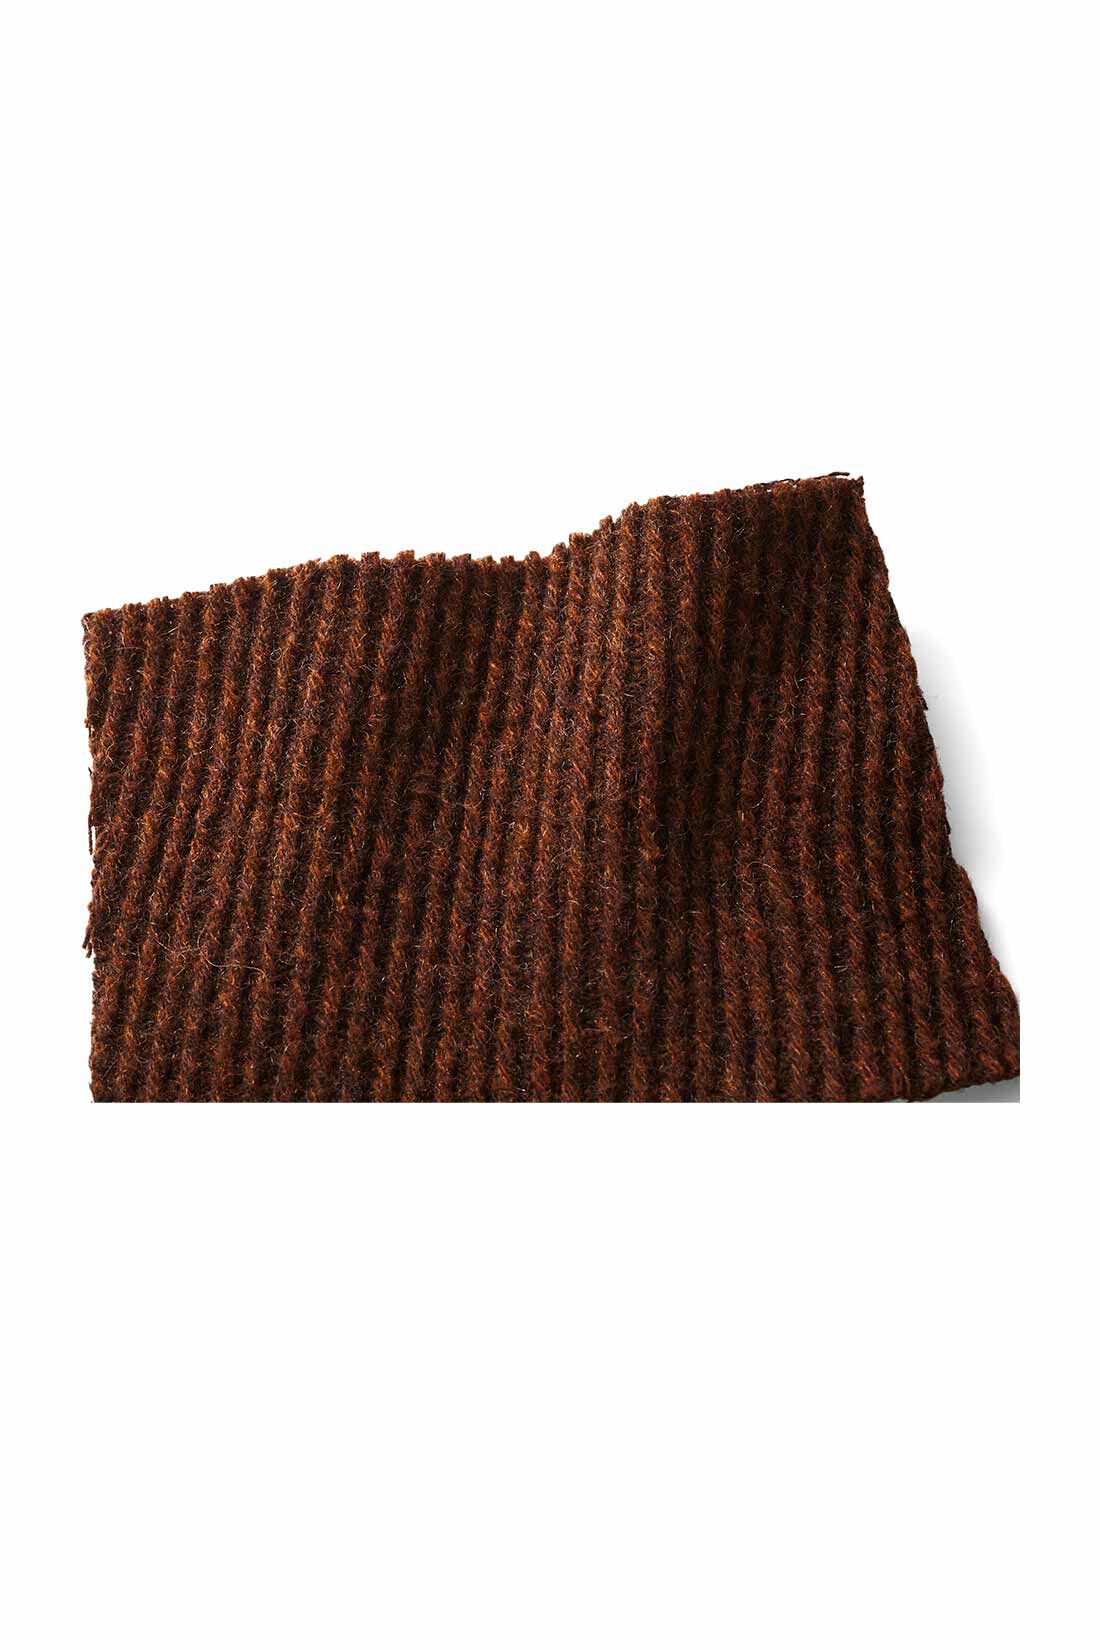 MEDE19F|MEDE19F ミックス調ウール混カルゼのハイネックコート〈ブラウン〉|ウールブレンドのカルゼ織り生地。斜めに太うねがはしる重厚感ある素材。